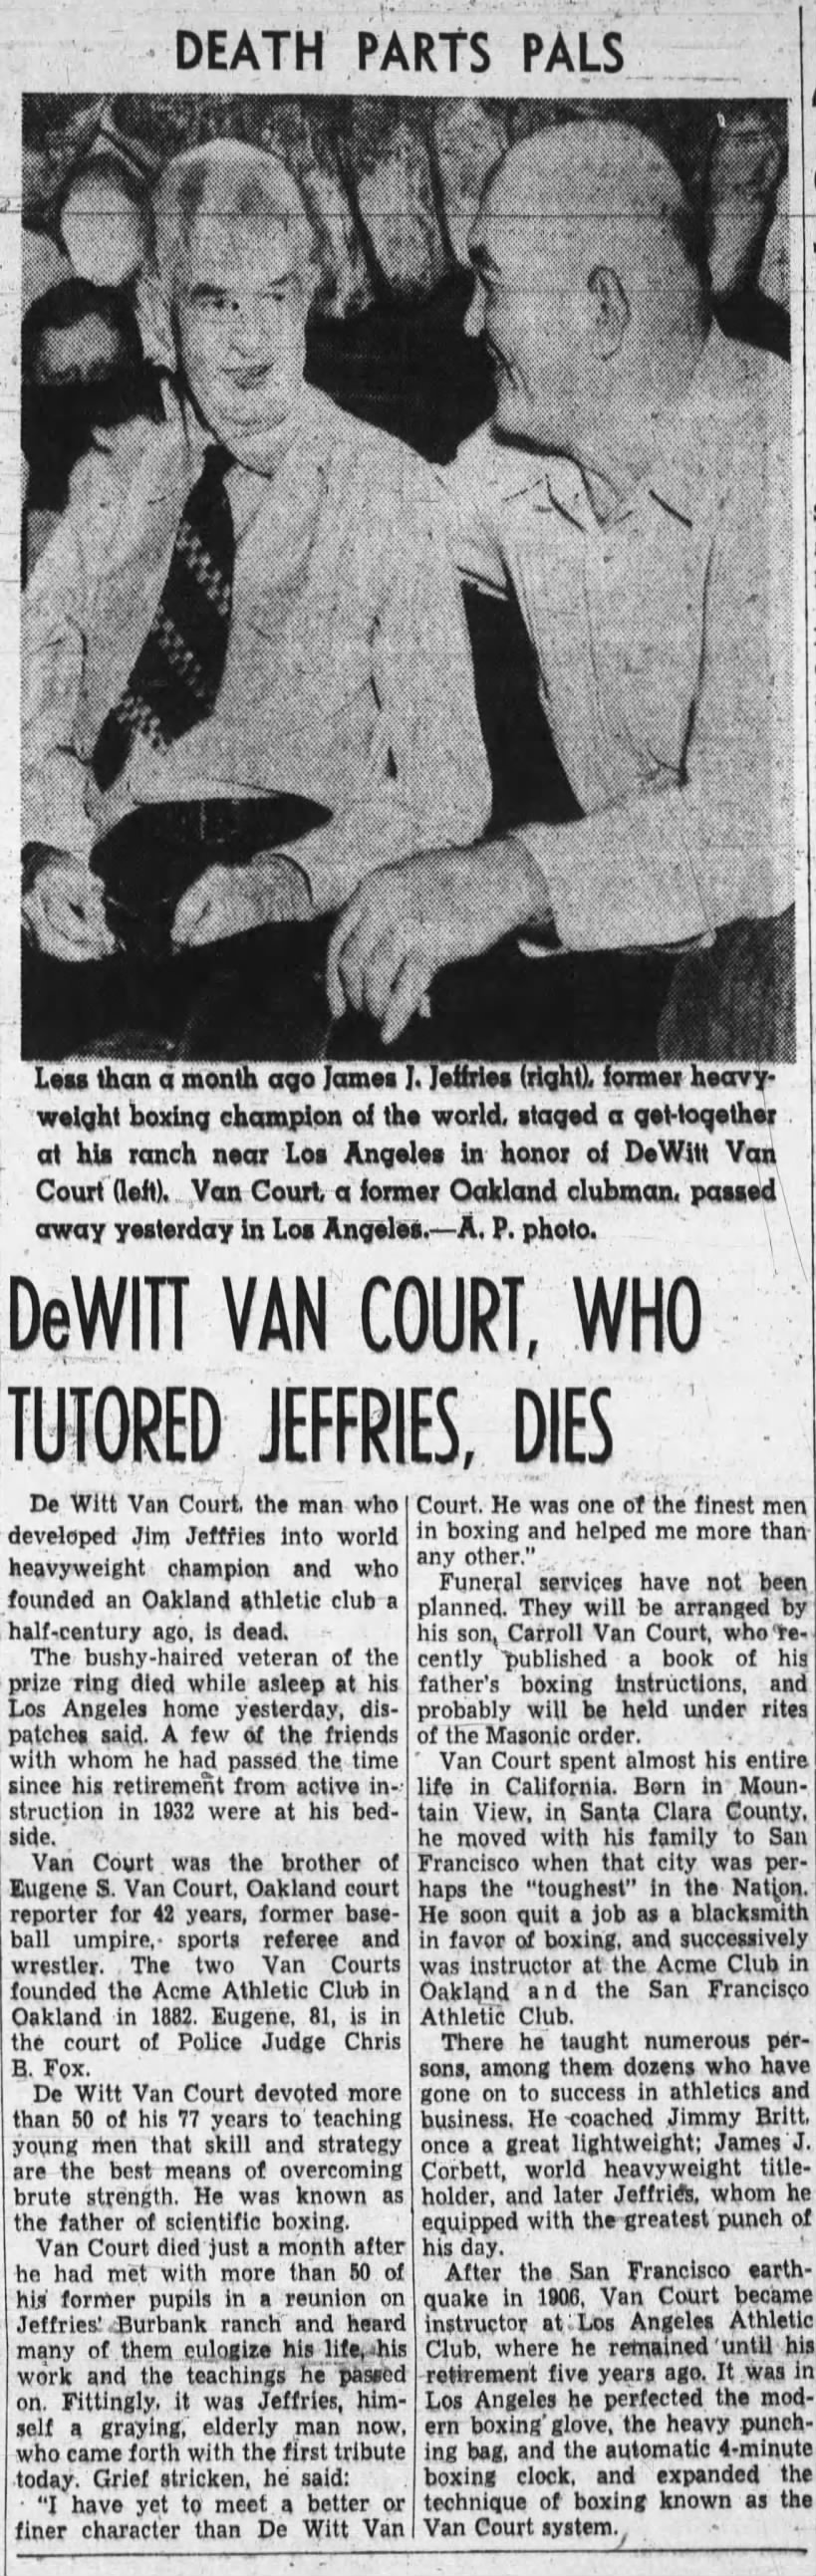 DeWitt Van Court, founder of Acme Athletic Club, dies